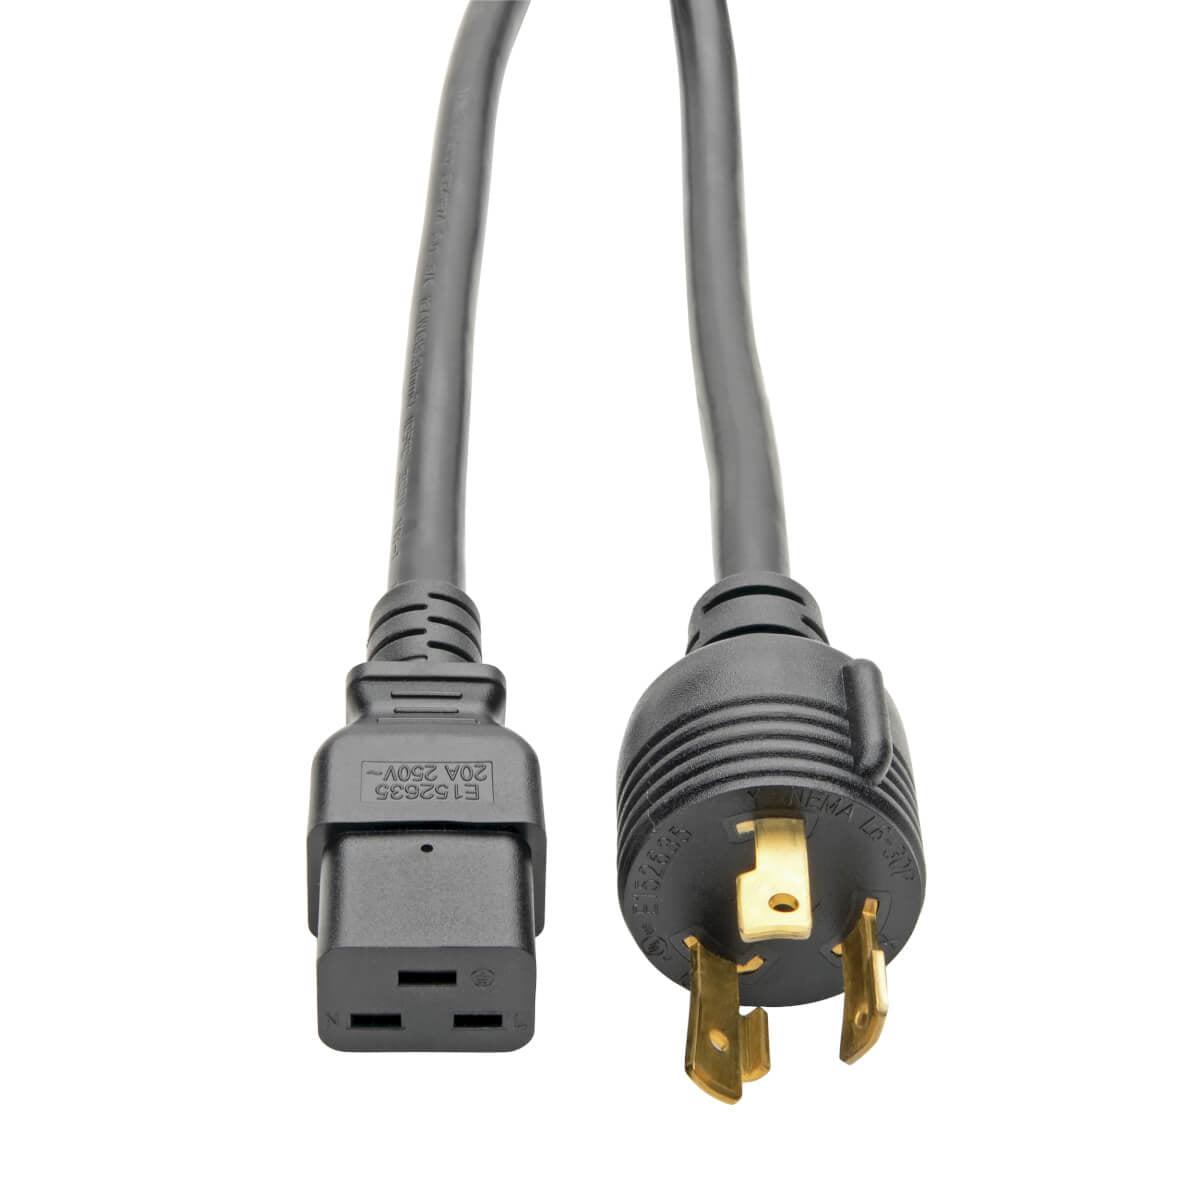 Tripp Lite P040-012-P30 Power Cable Black 3.7 M Nema L6-30P C19 Coupler